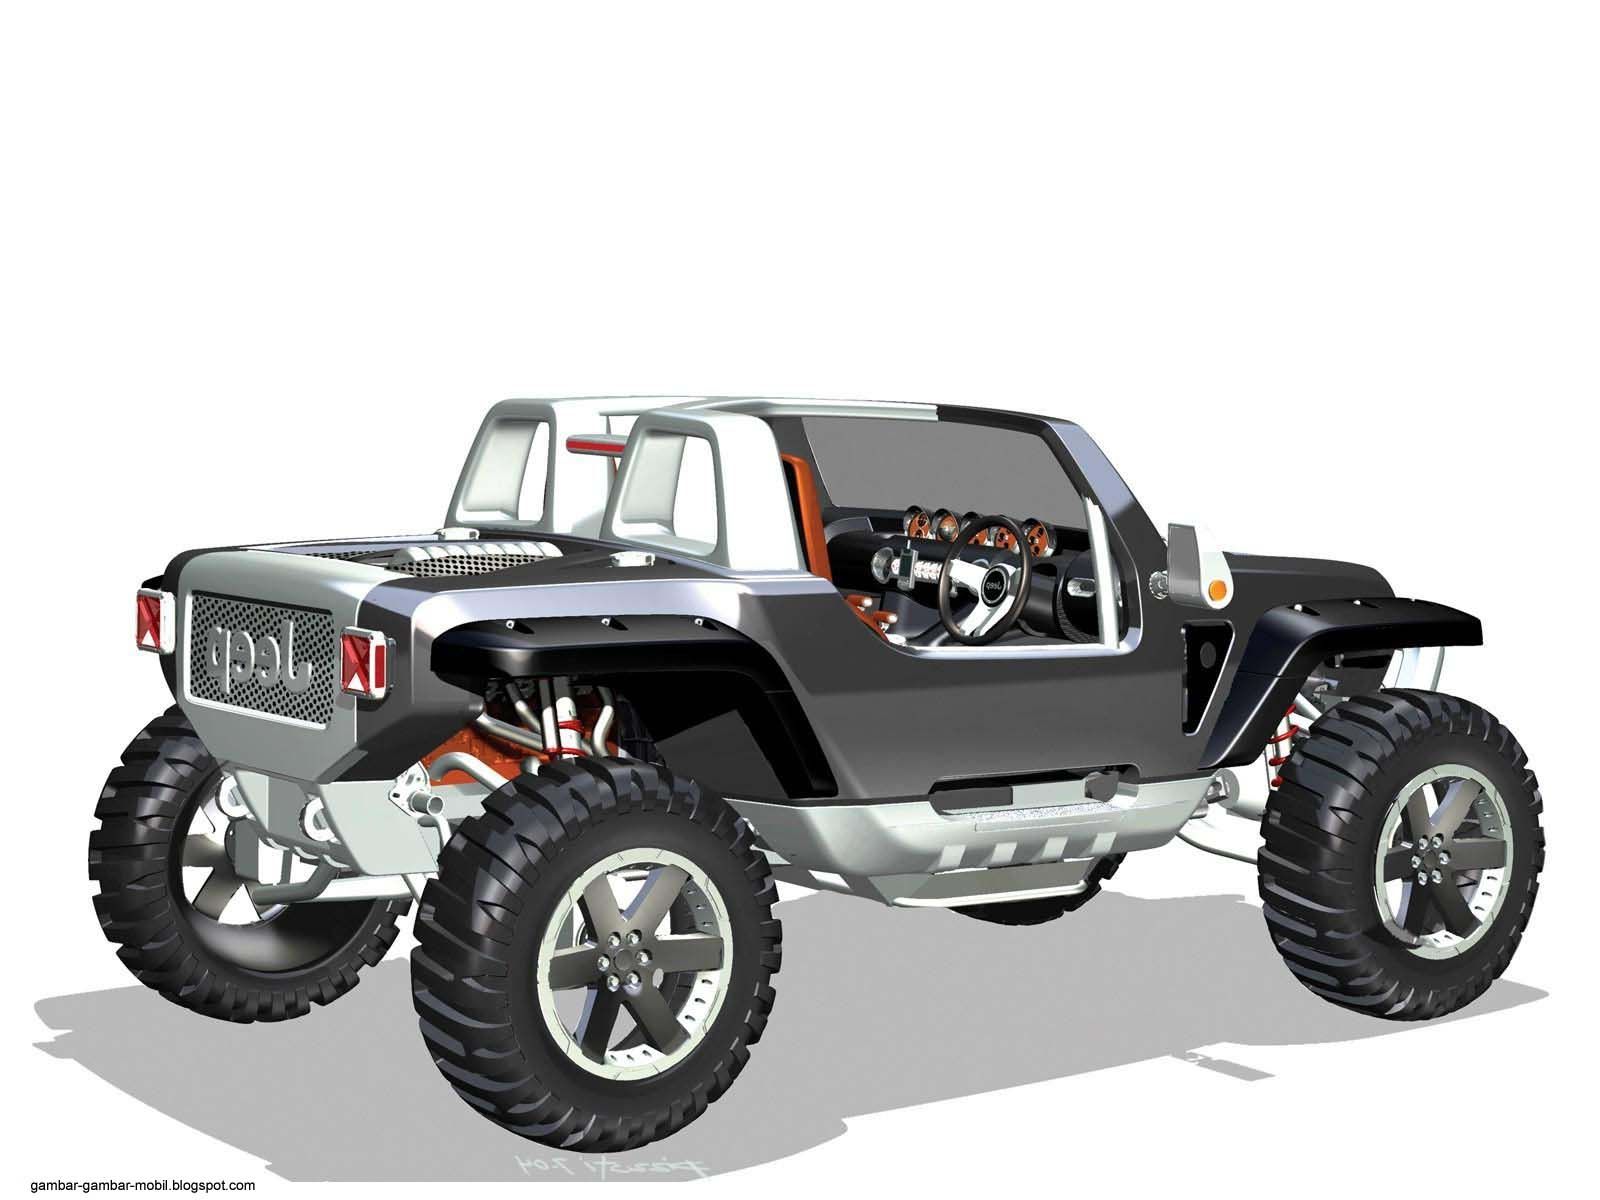 Modifikasi Mobil Offroad Yang Harus Diperhatikan - Macam Mobil Jeep Modifikasi , HD Wallpaper & Backgrounds